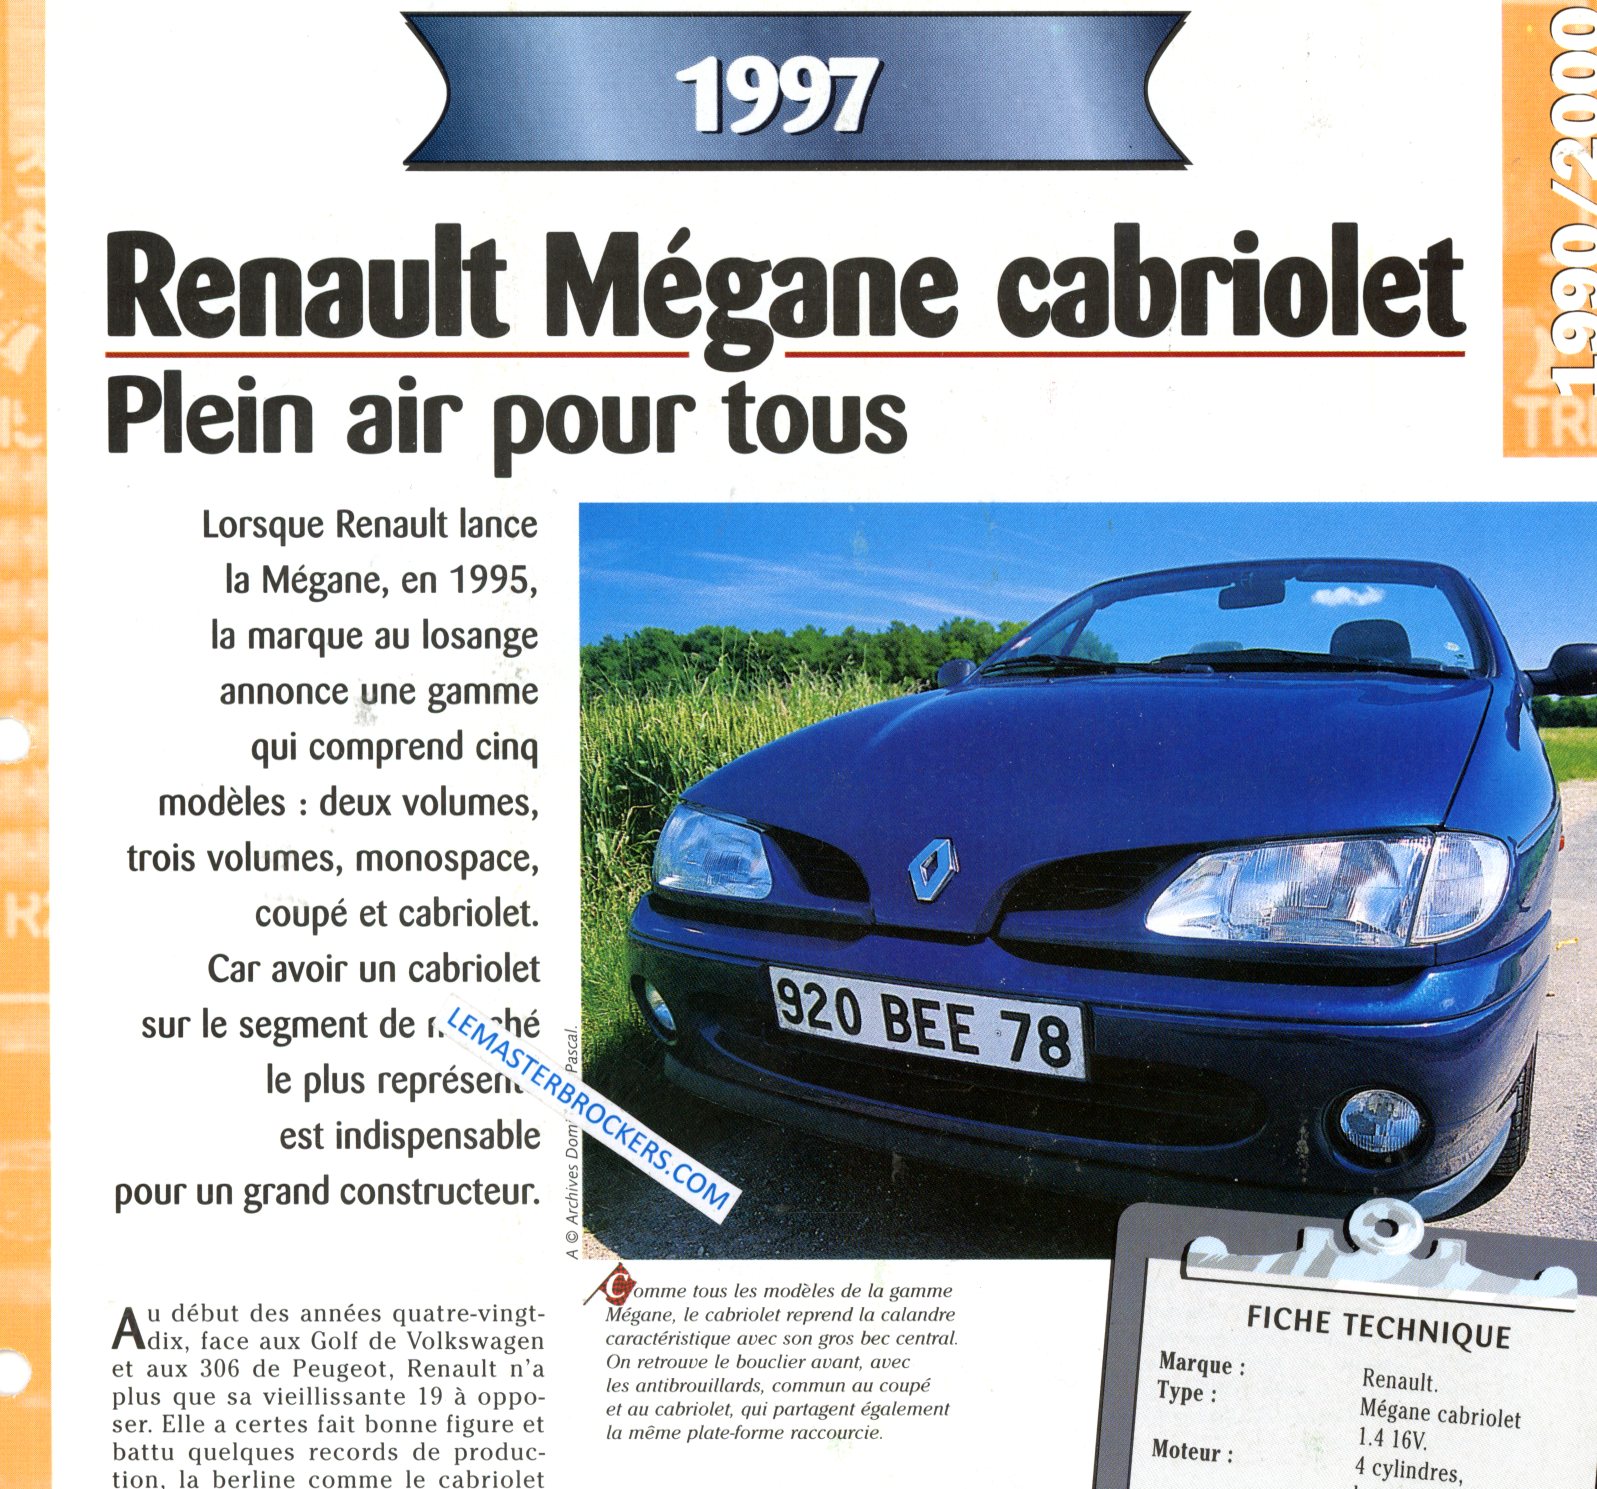 RENAULT MEGANE CABRIOLET 1997 FICHE TECHNIQUE